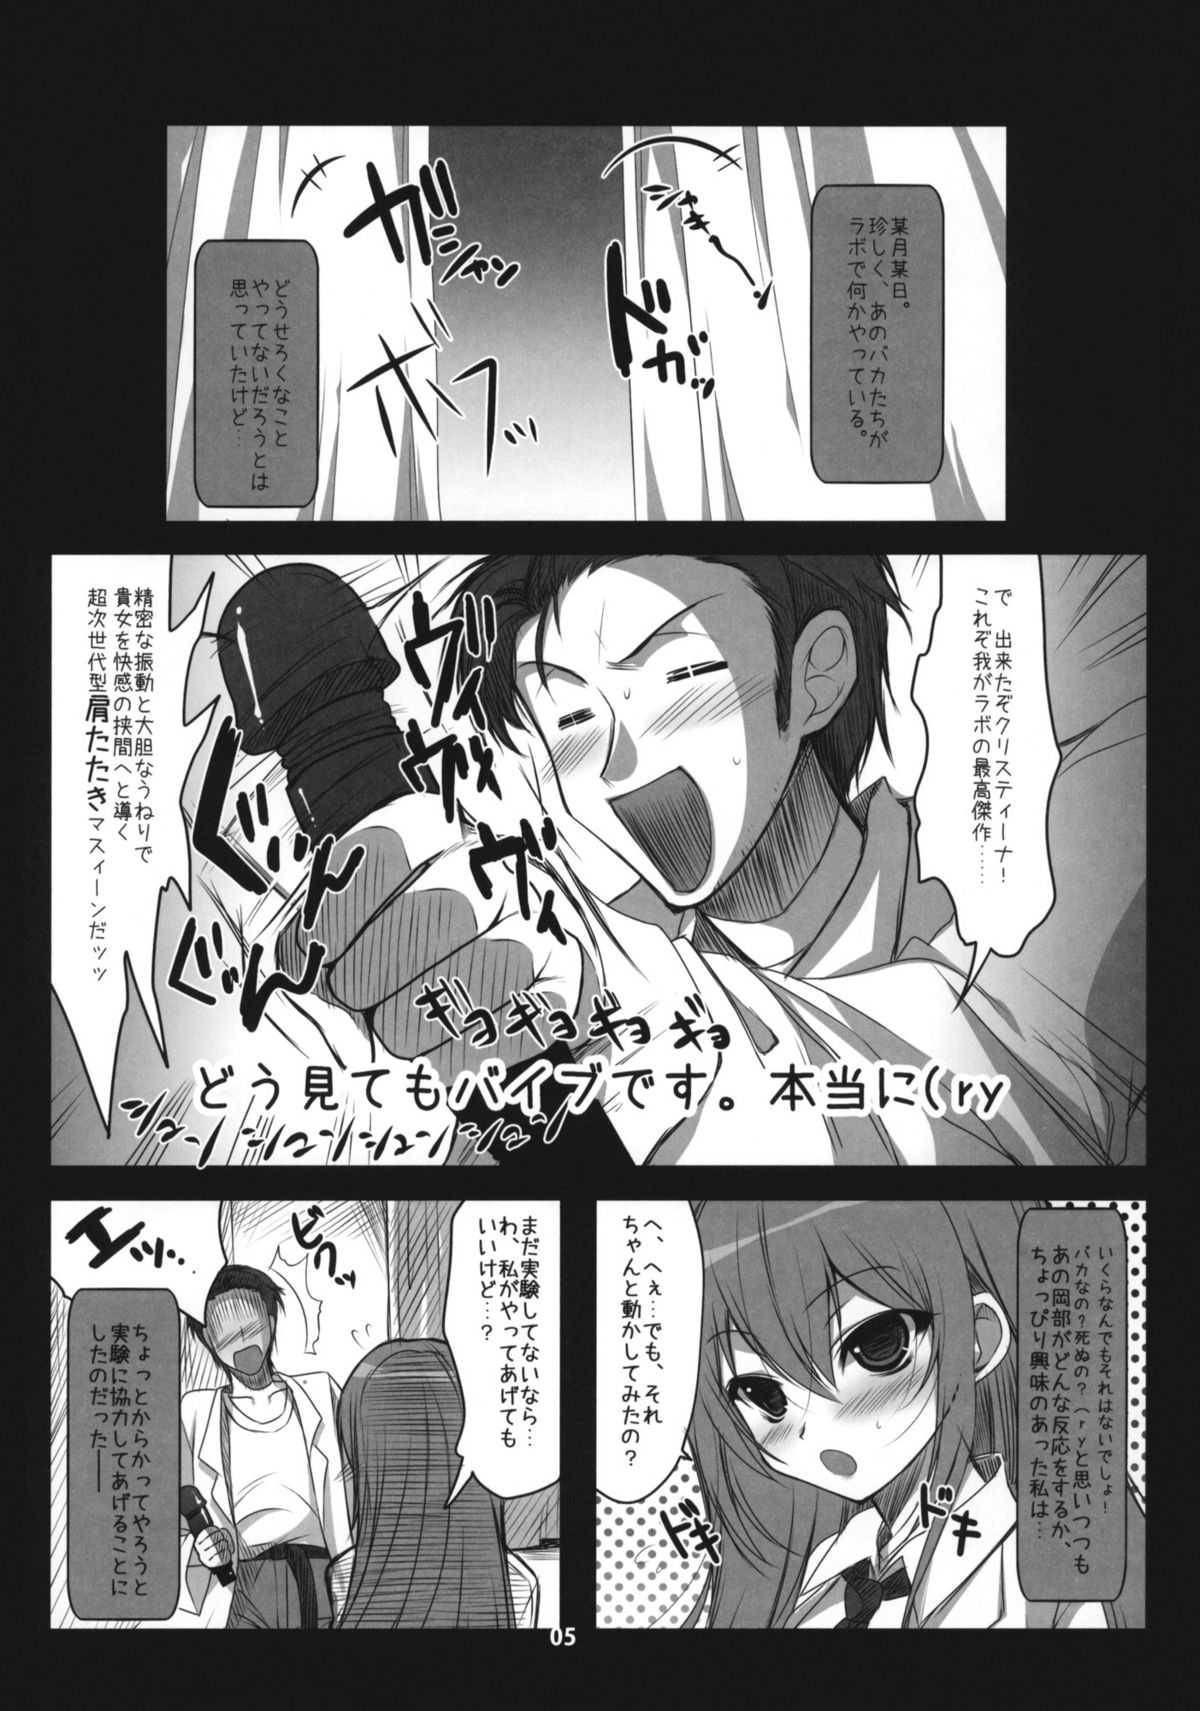 (COMIC1☆4) [Ninokoya] Steins;Gate Sairokuhon ~Yorozu Gozen 3・4~ (Steins;Gate) (COMIC1☆4) (同人誌) [にのこや] Steins;Gate 再録本 ~よろず御膳参・四~ (Steins;Gate)